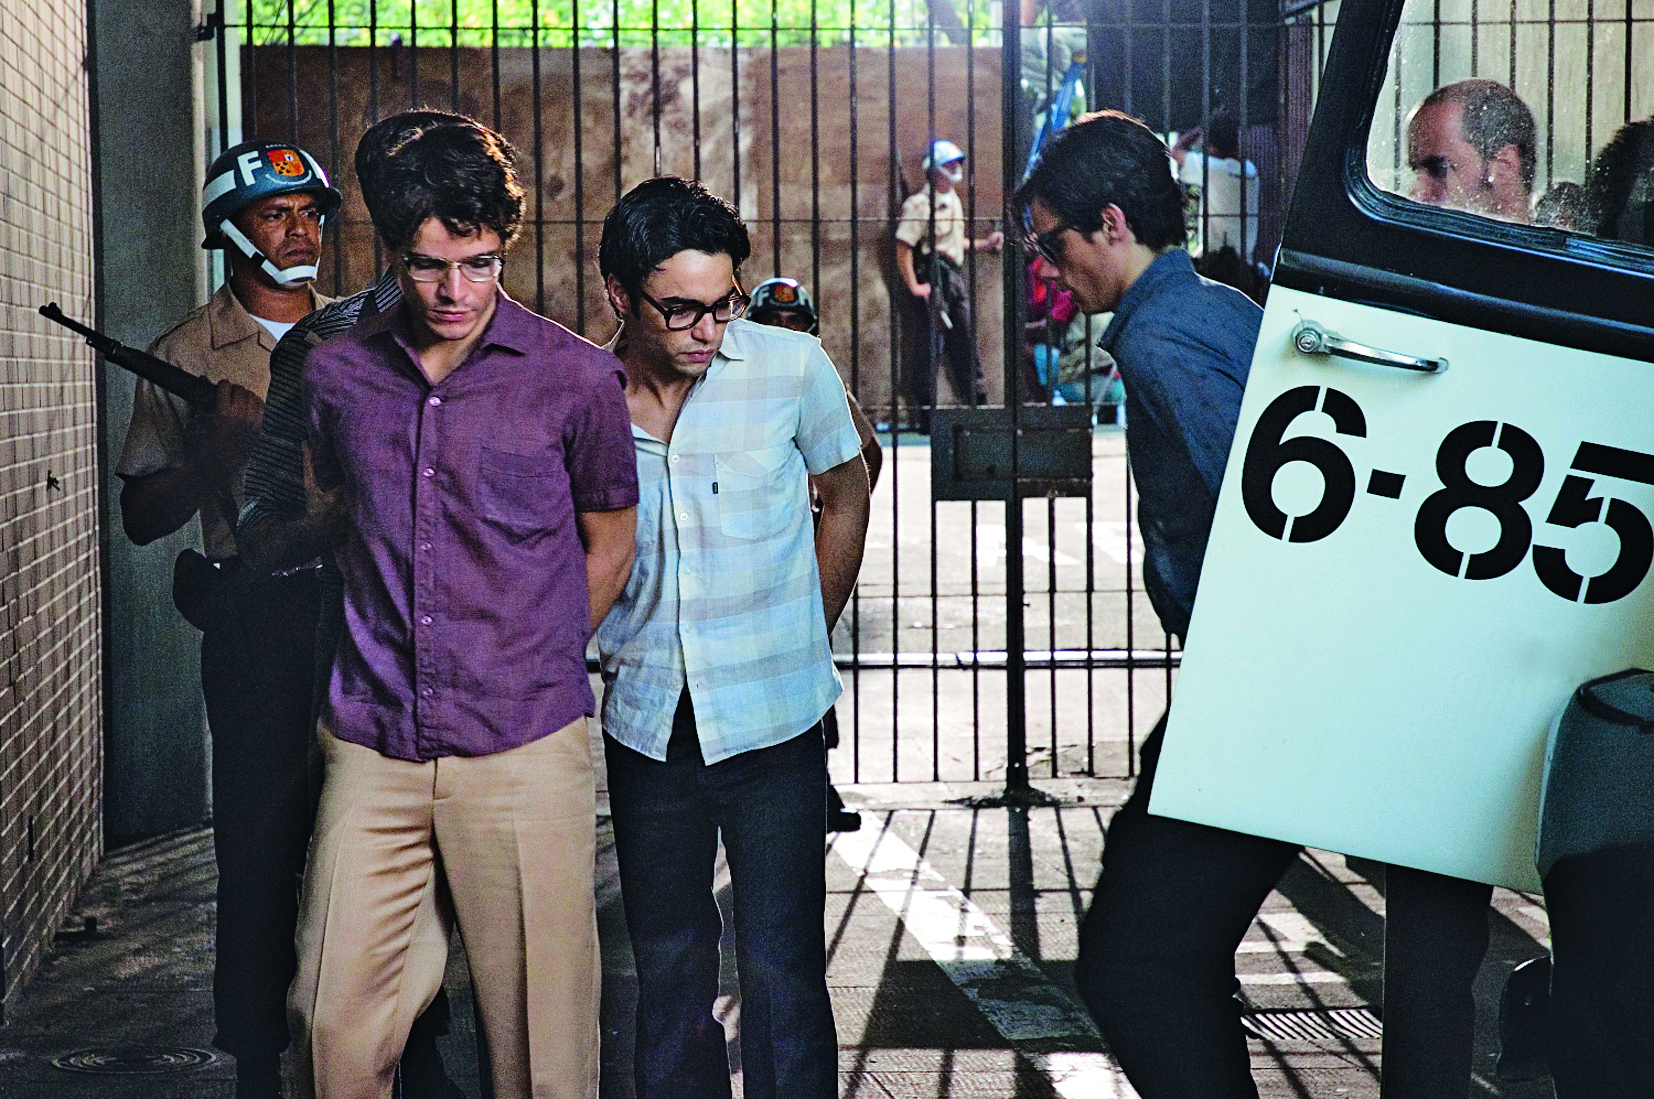 Cena de filme. Três rapazes de óculos, calça e camisa social, presos pela polícia, descem de um camburão. Policiais observam. Ao fundo, um grande portão fechado.